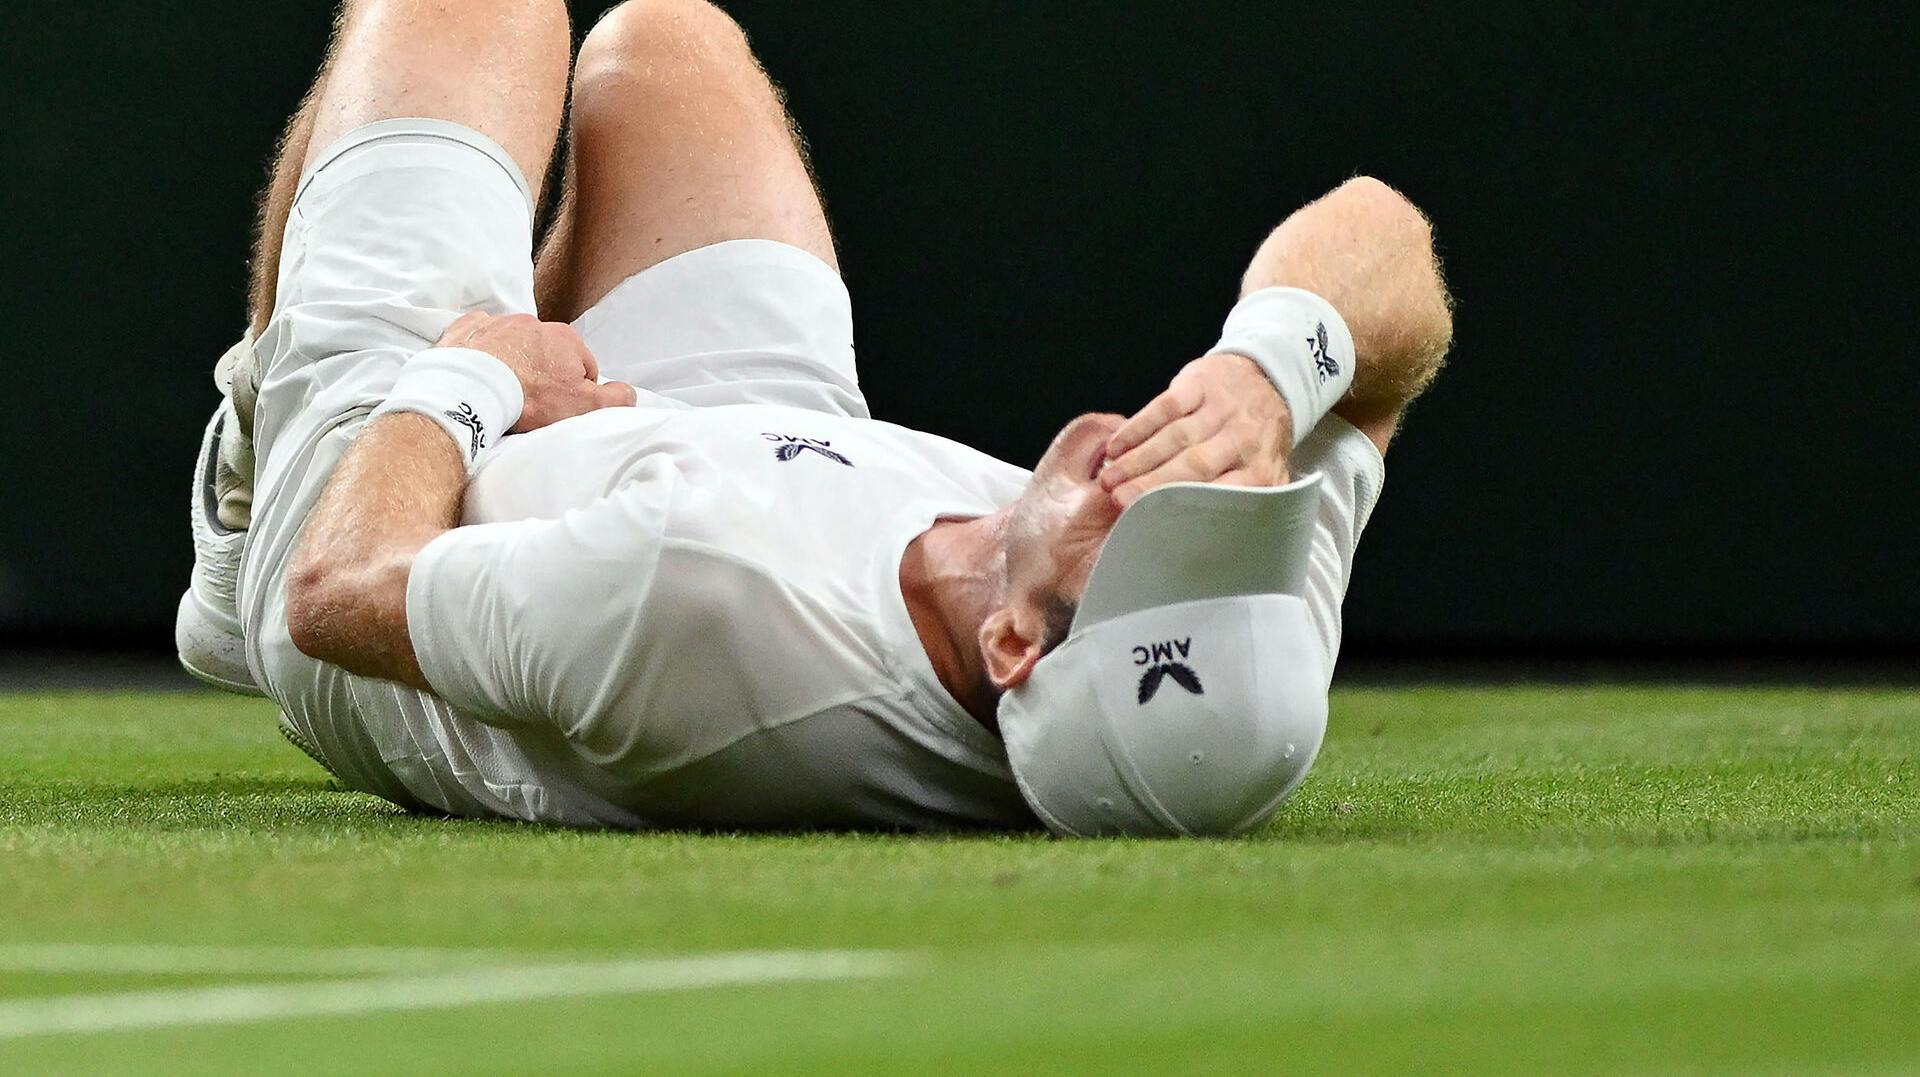 Der gik et gys gennem tilskuerne på Centre Court sent torsdag aften, da hjemmebanefavoritten Andy Murray gled i græsset.